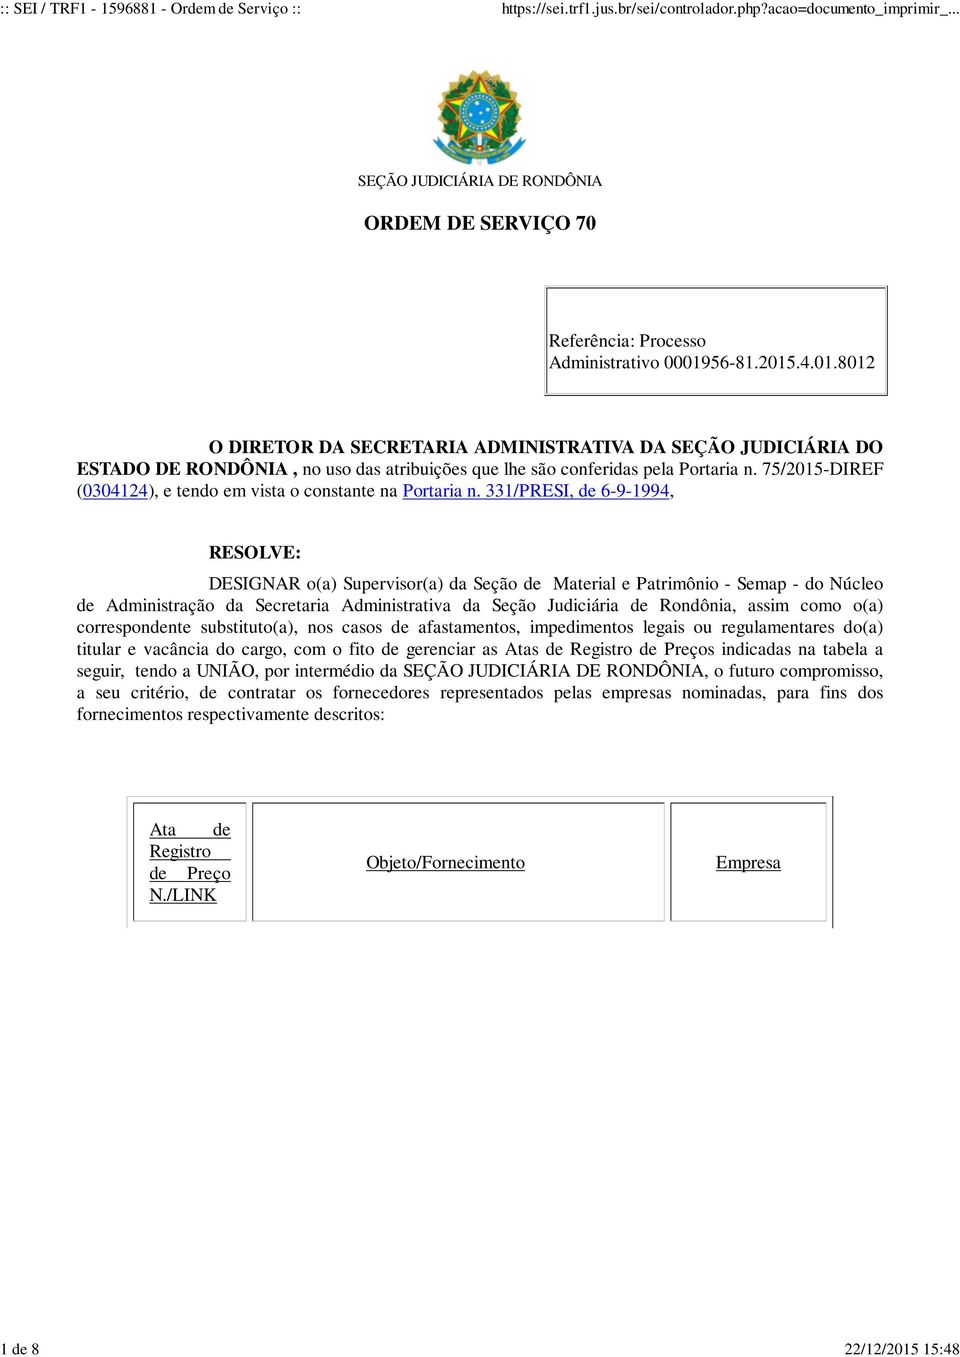 331/PRESI, de 6-9-1994, RESOLVE: DESIGNAR o(a) Supervisor(a) da Seção de Material e Patrimônio - Semap - do Núcleo de Administração da Secretaria Administrativa da Seção Judiciária de Rondônia, assim